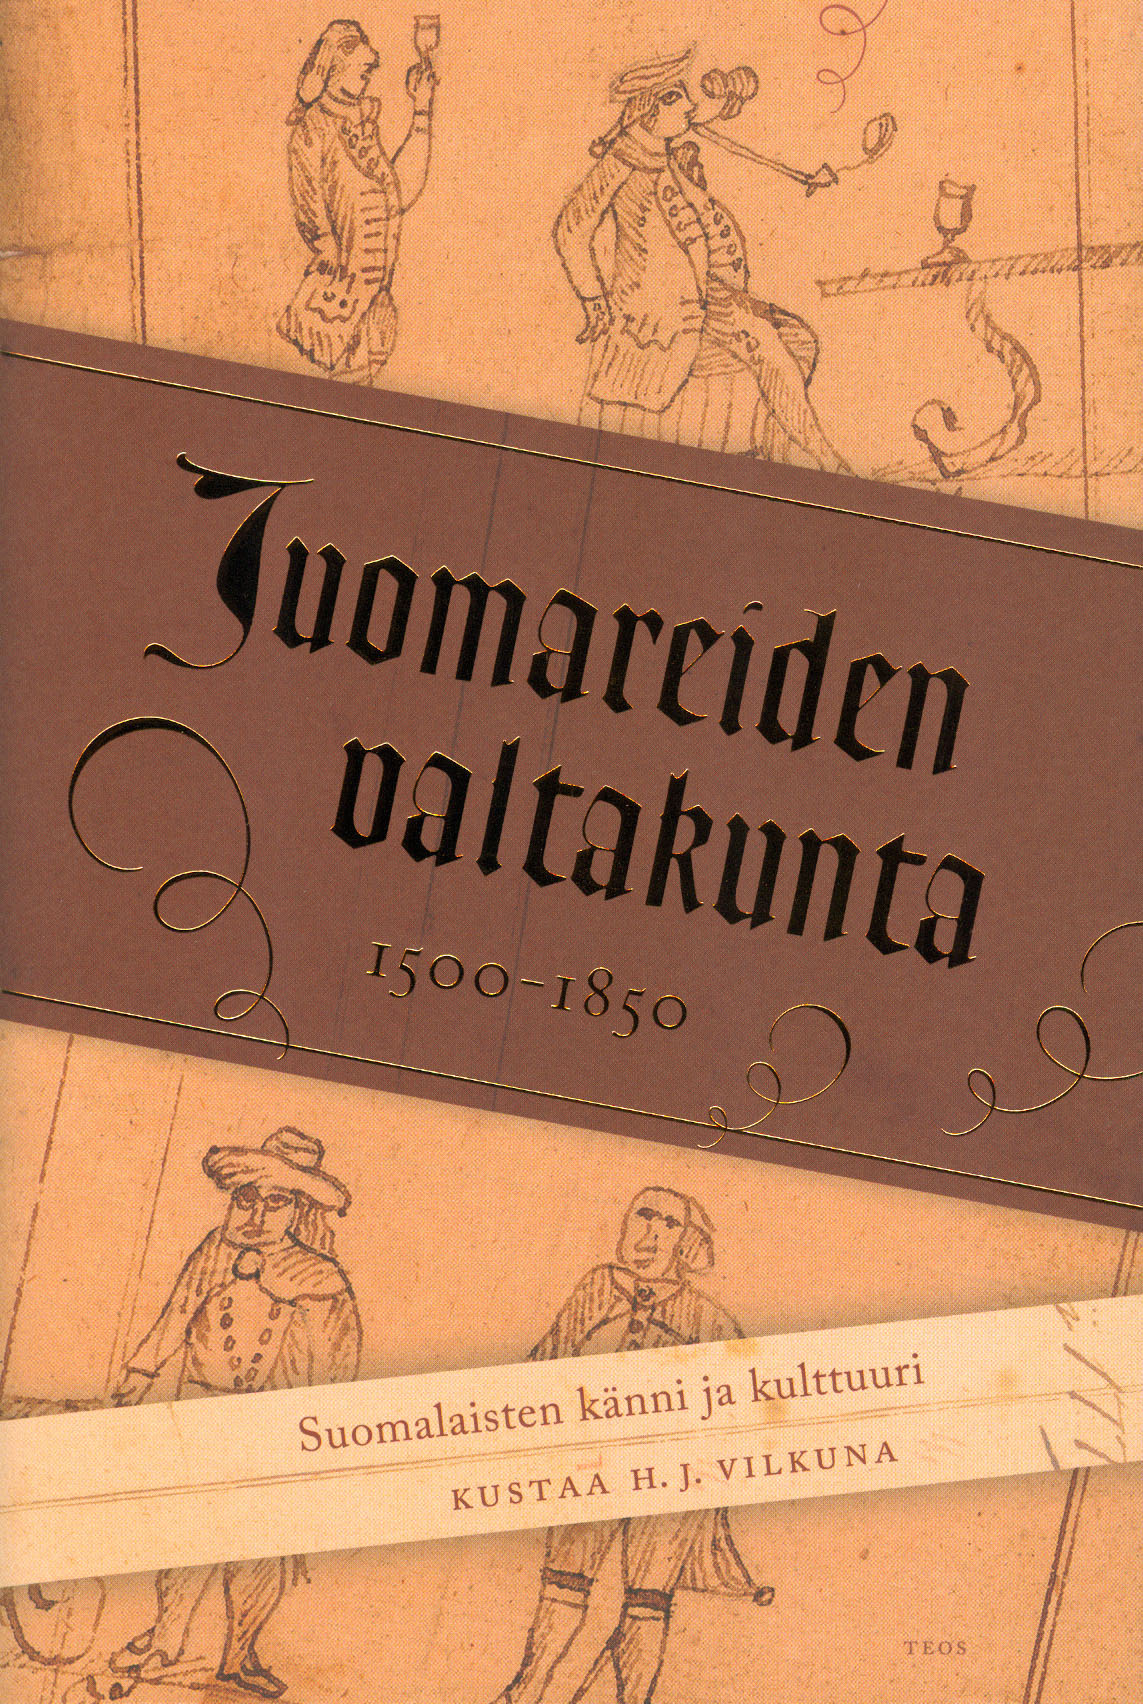 Vilkuna, Kustaa H. J. - Juomareiden valtakunta: Somalaisten känni ja kulttuuri 1500-1850, e-kirja